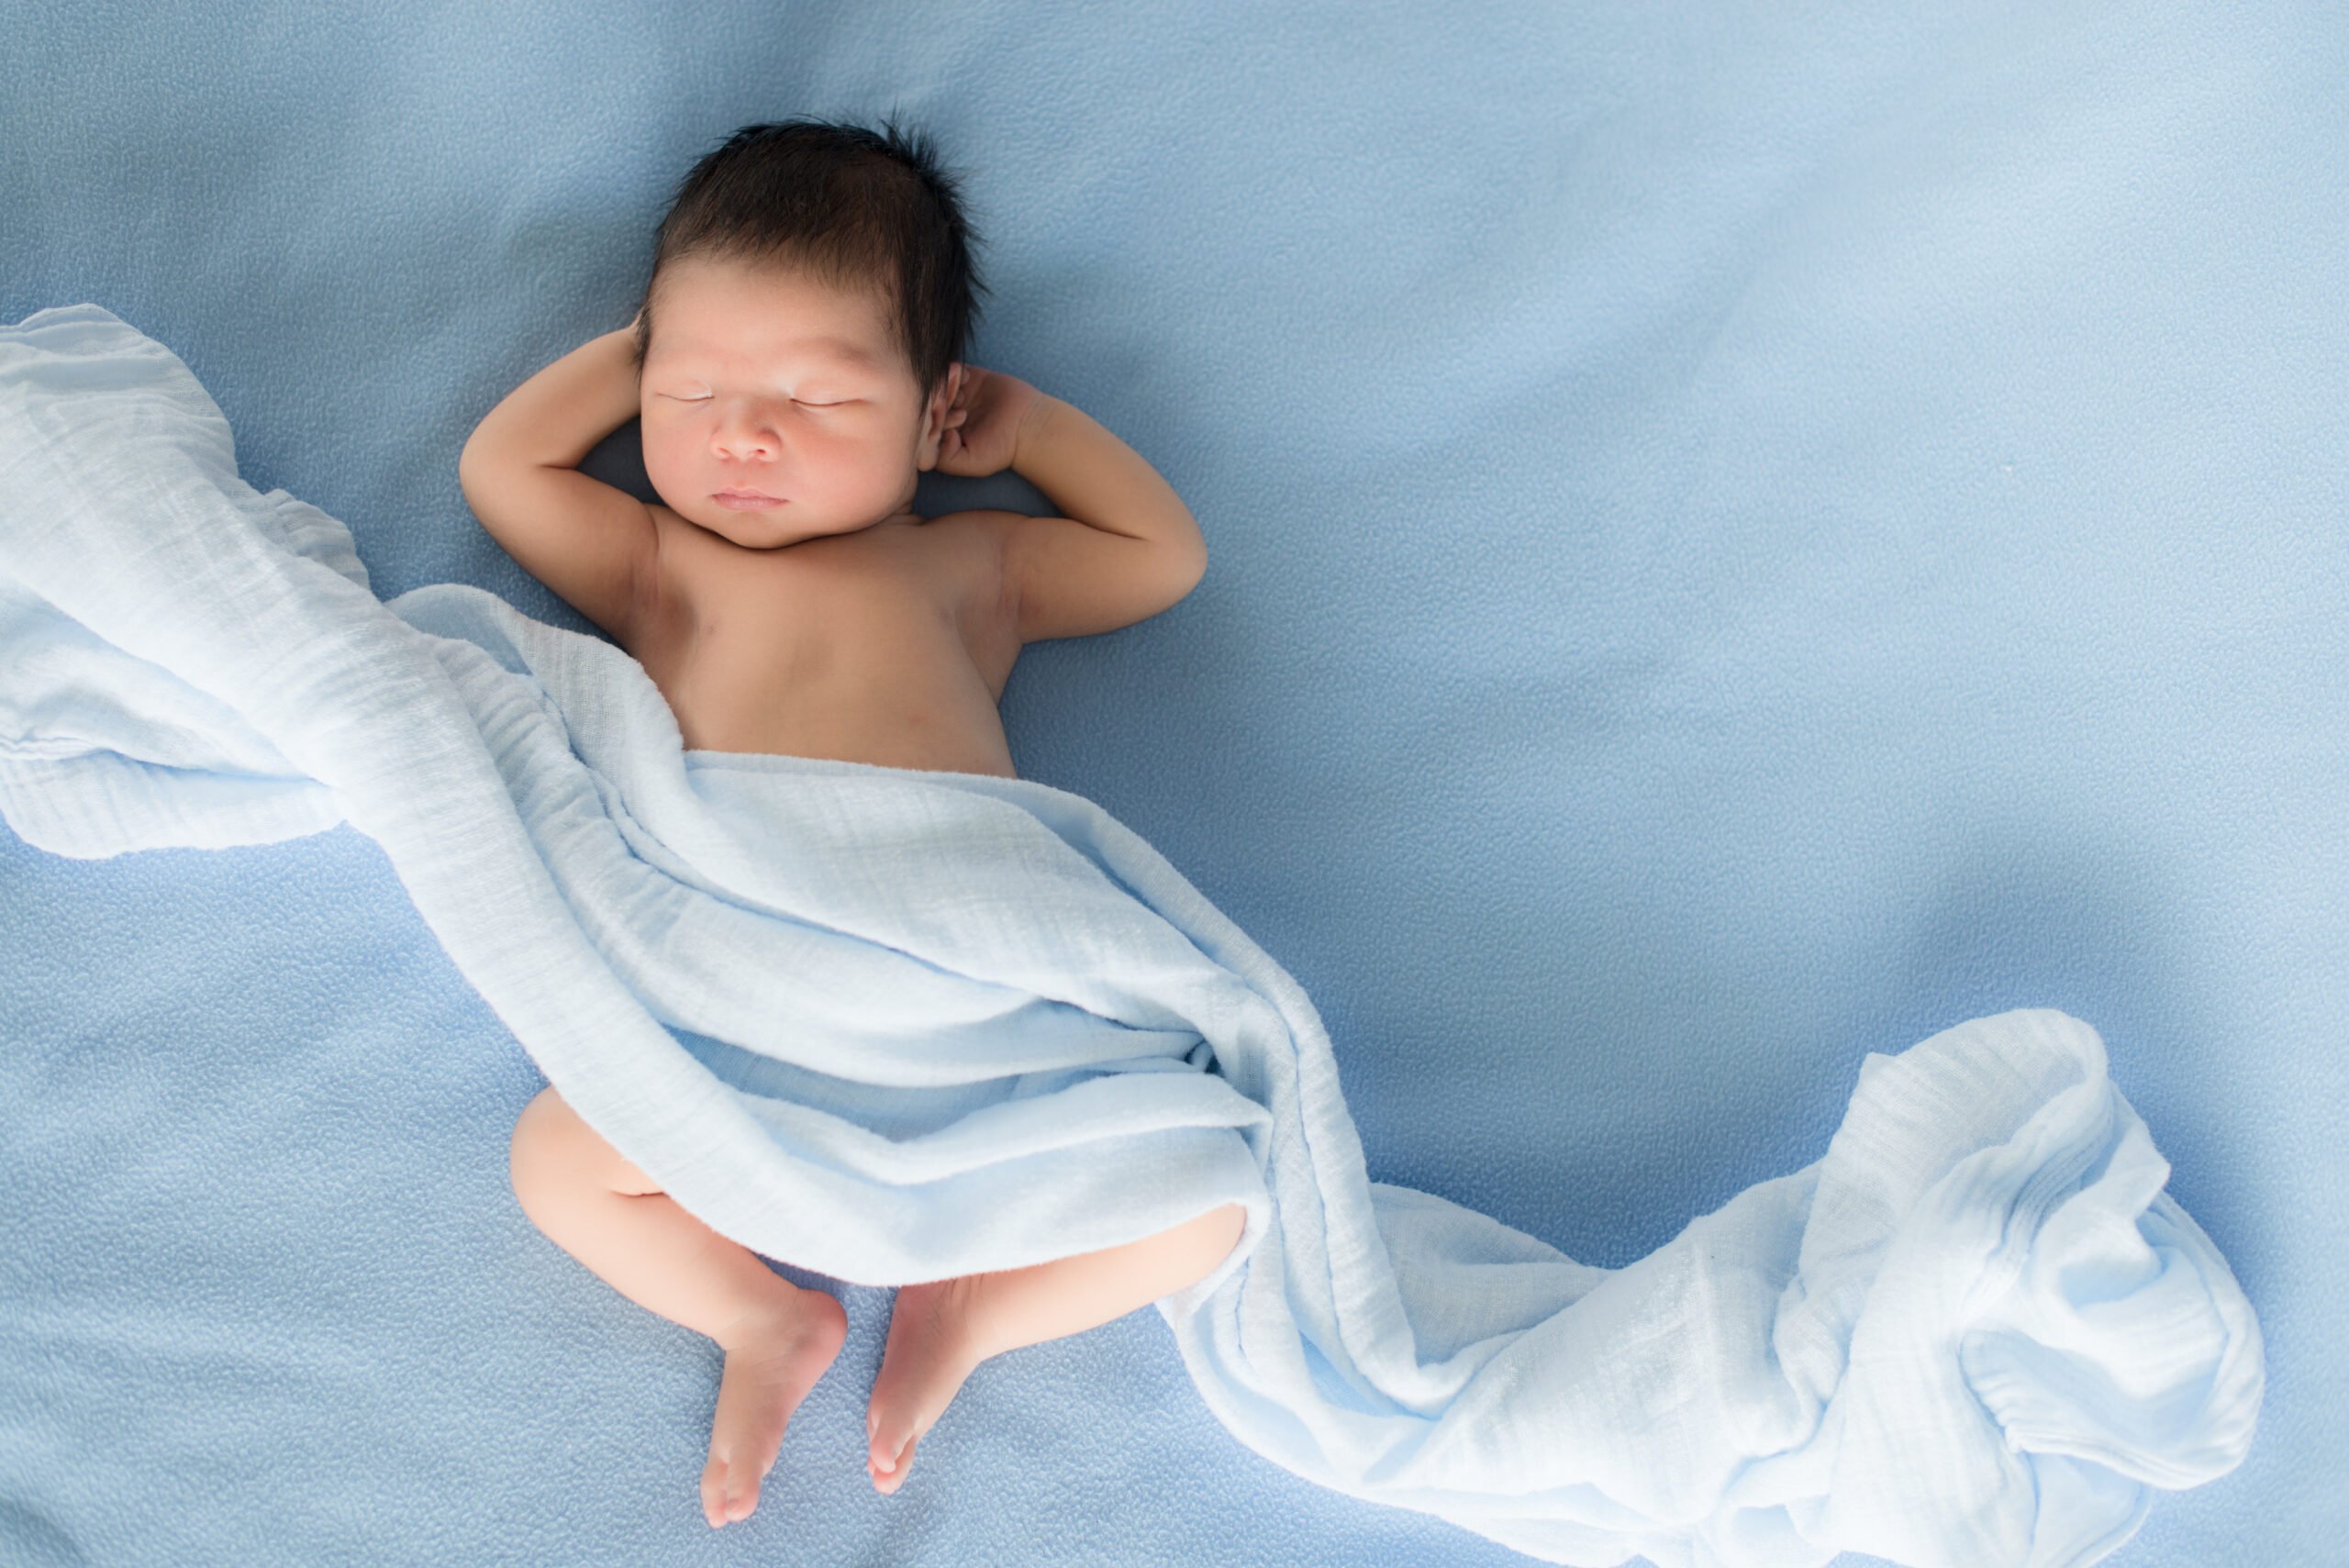 Sedang Mencari Popok Bayi Baru Lahir? Ini 7 Rekomendasi yang Bisa Menjadi Pilihan!